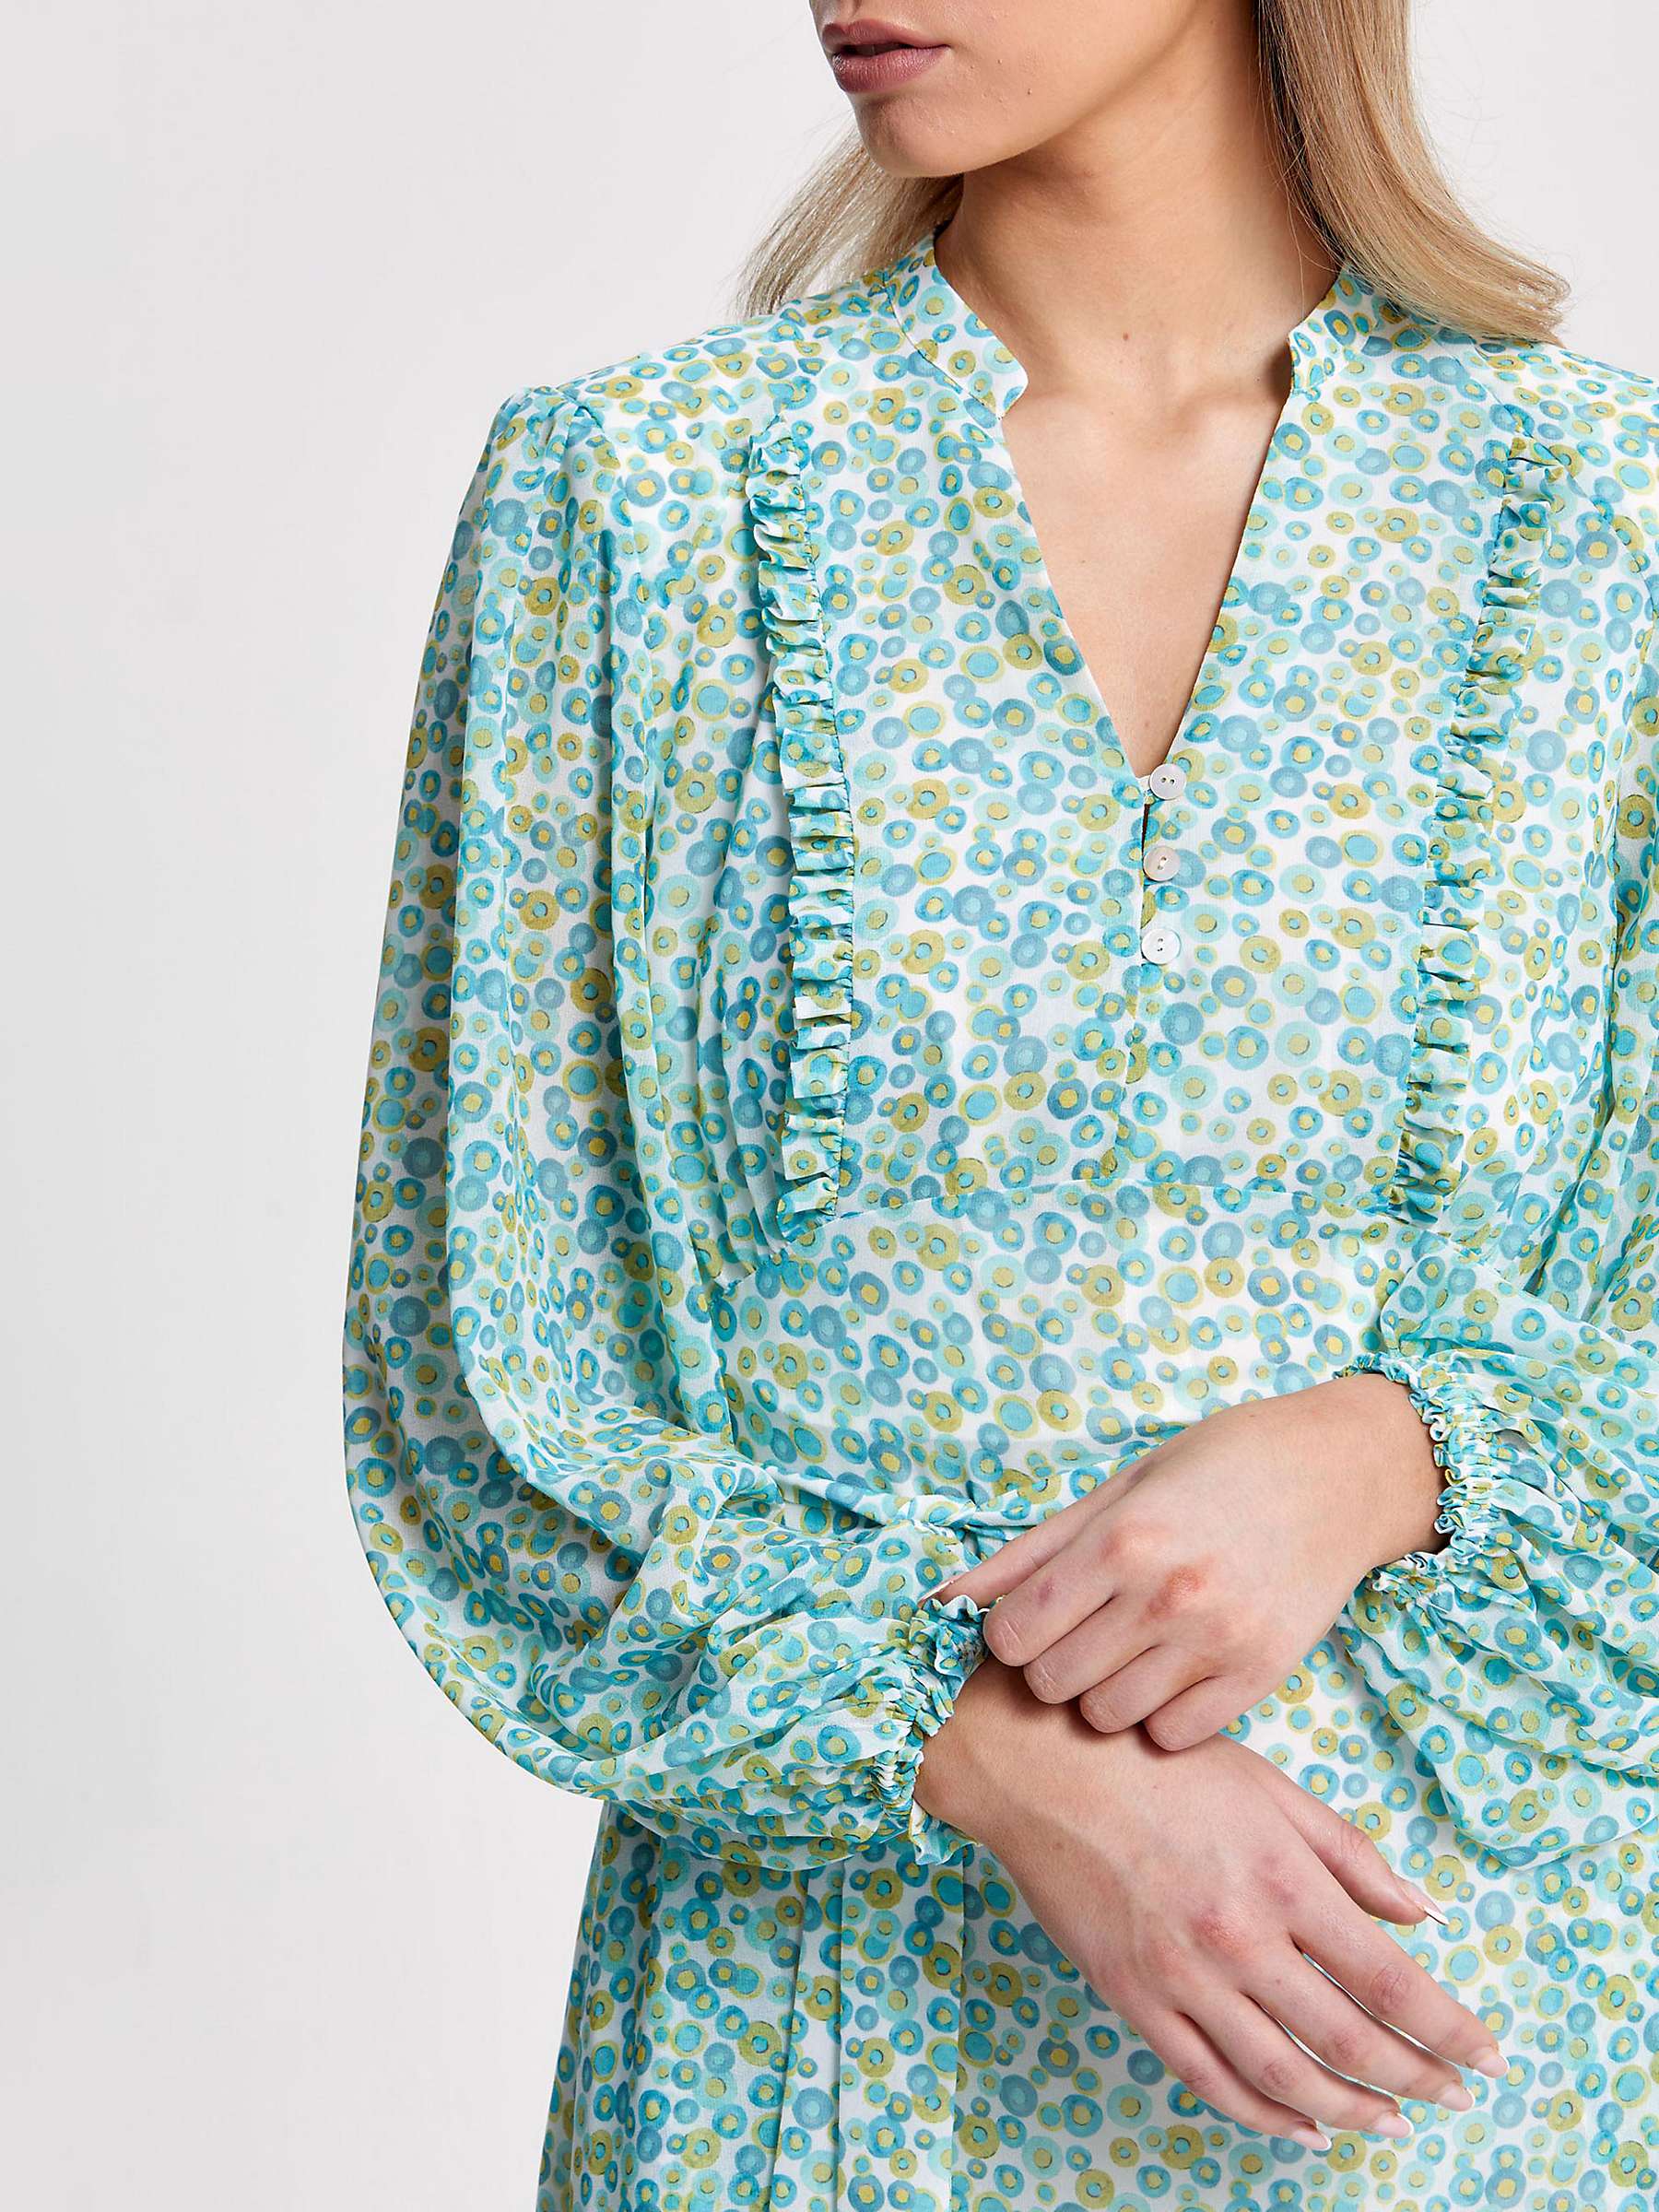 Buy Helen McAlinden Bailey Smartie Print Dress, Multi Online at johnlewis.com